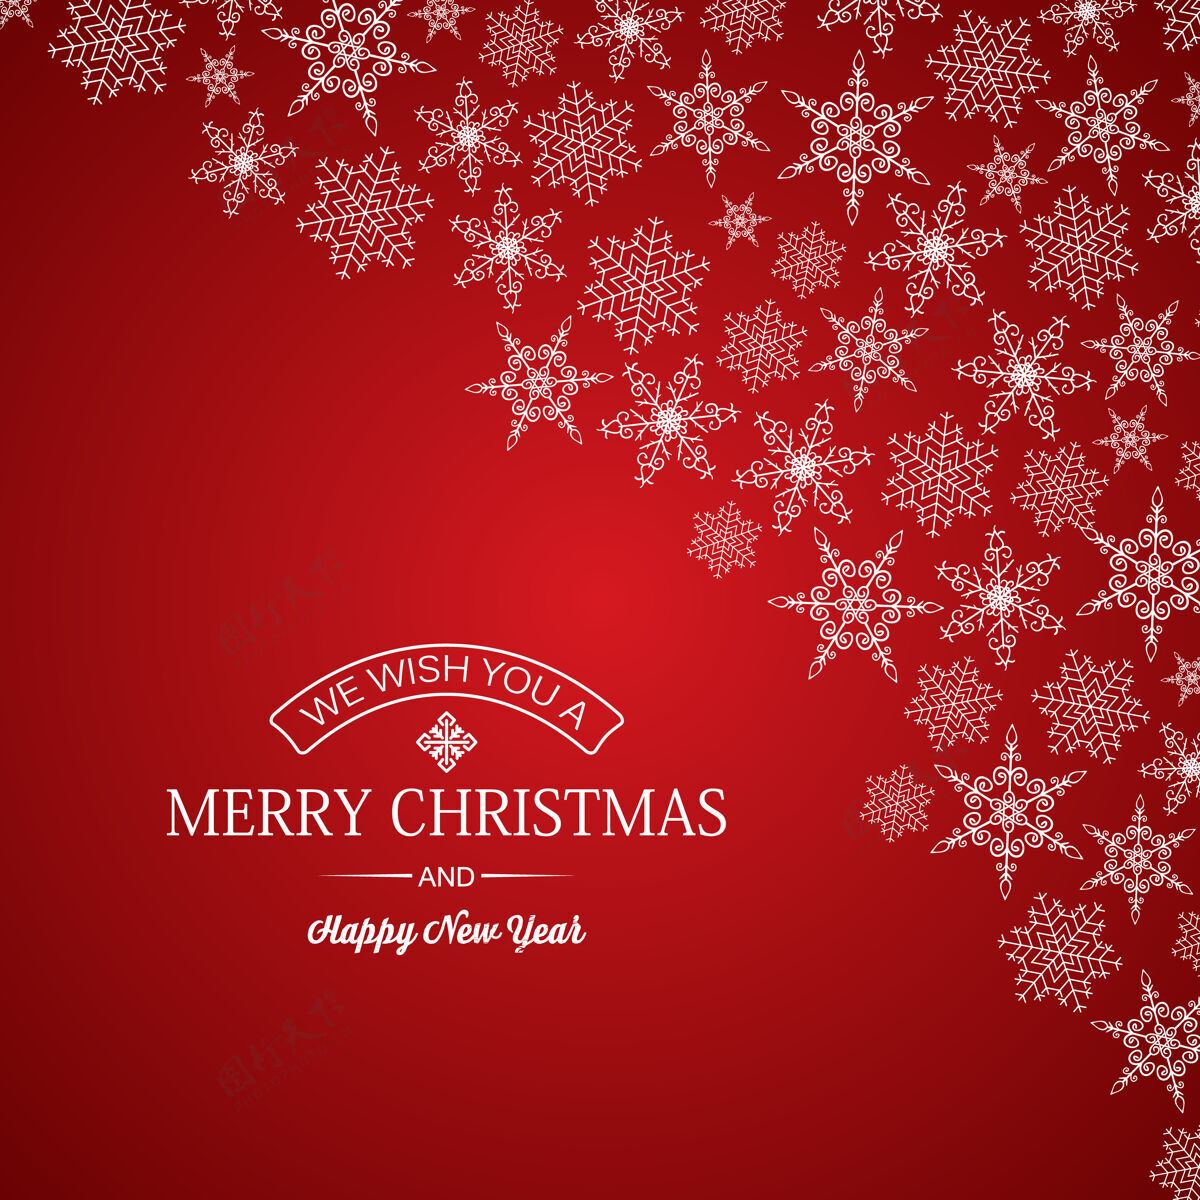 雪圣诞快乐和新年贺卡的题词和雪花的不同形状的红色剪影圣诞节闪亮